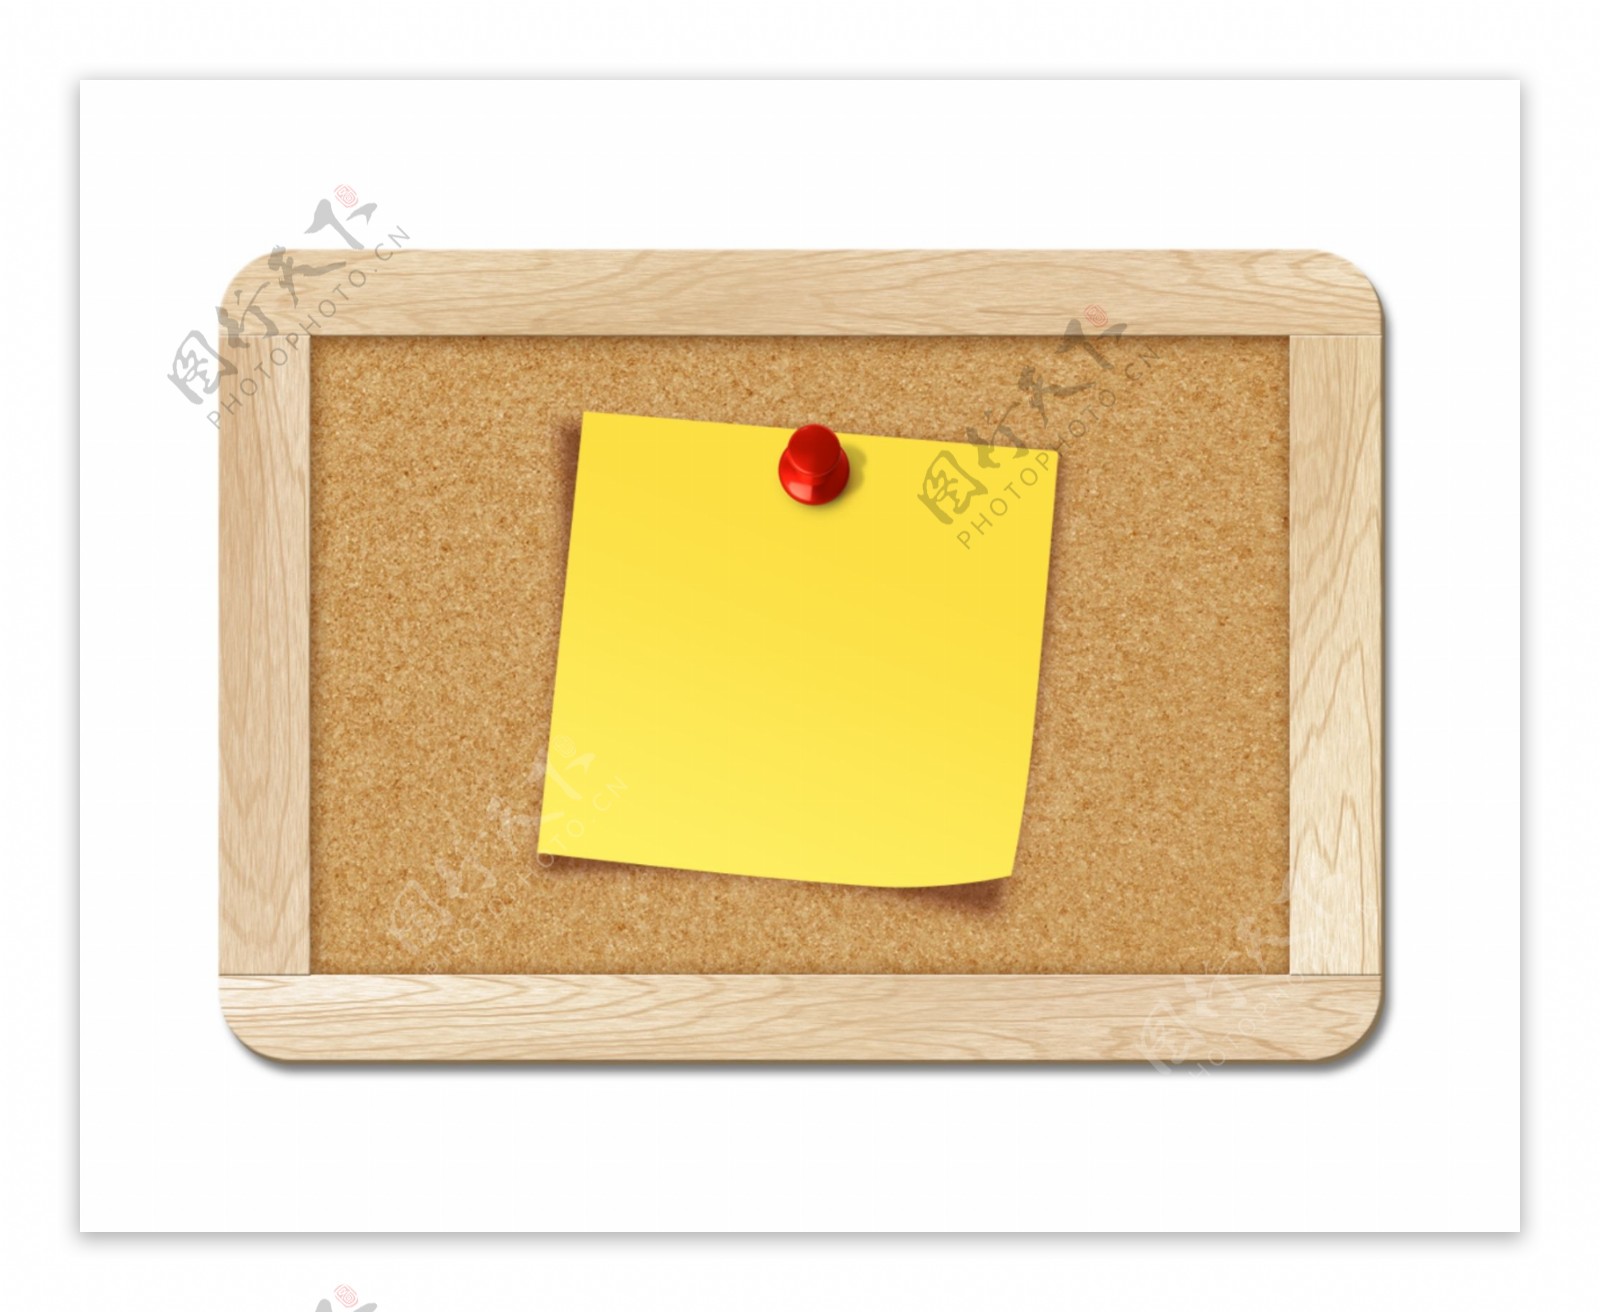 空白票据钉在软木板icon图标